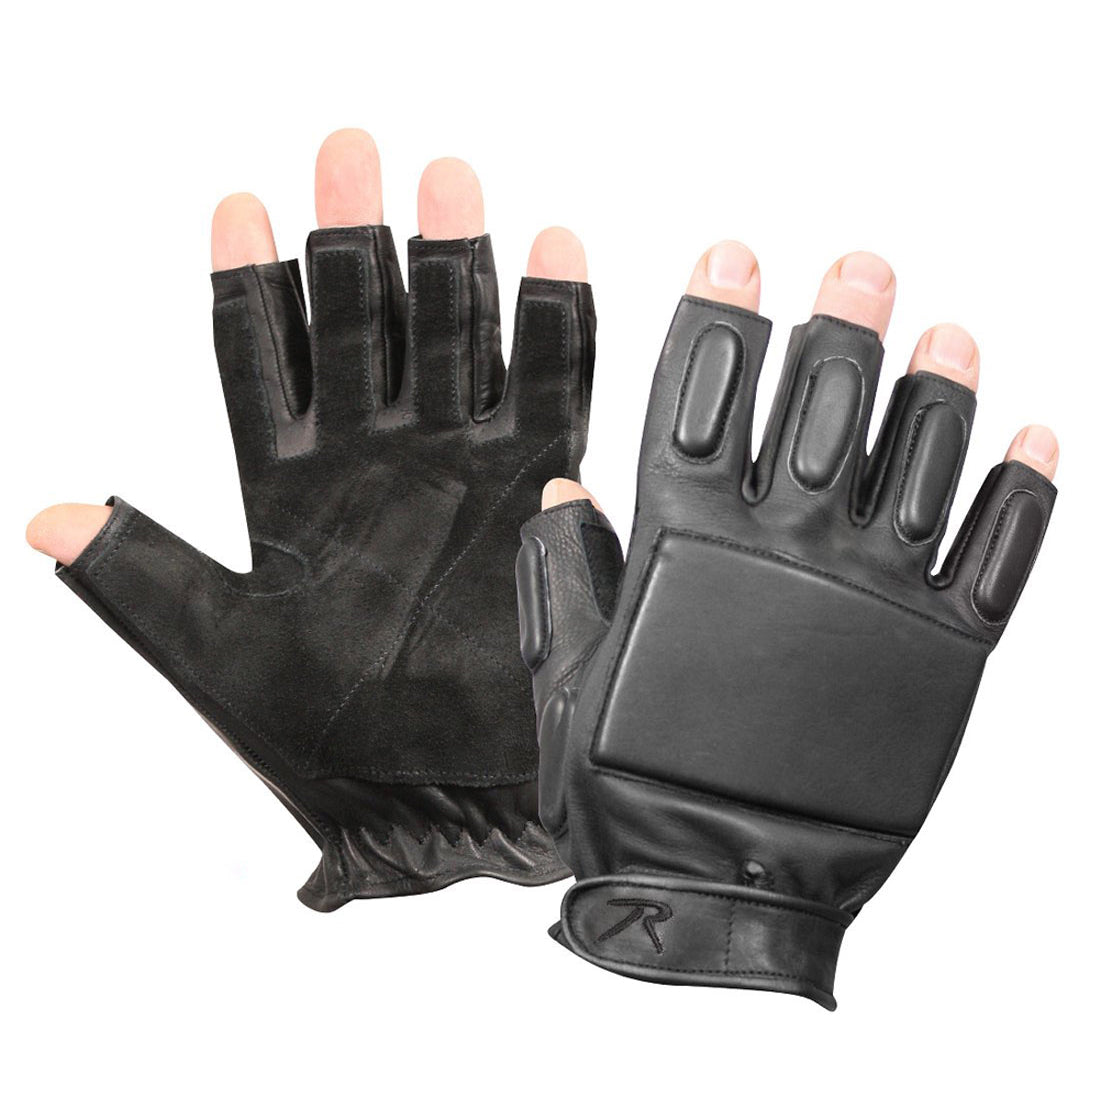 Fingerless Rappelling Gloves